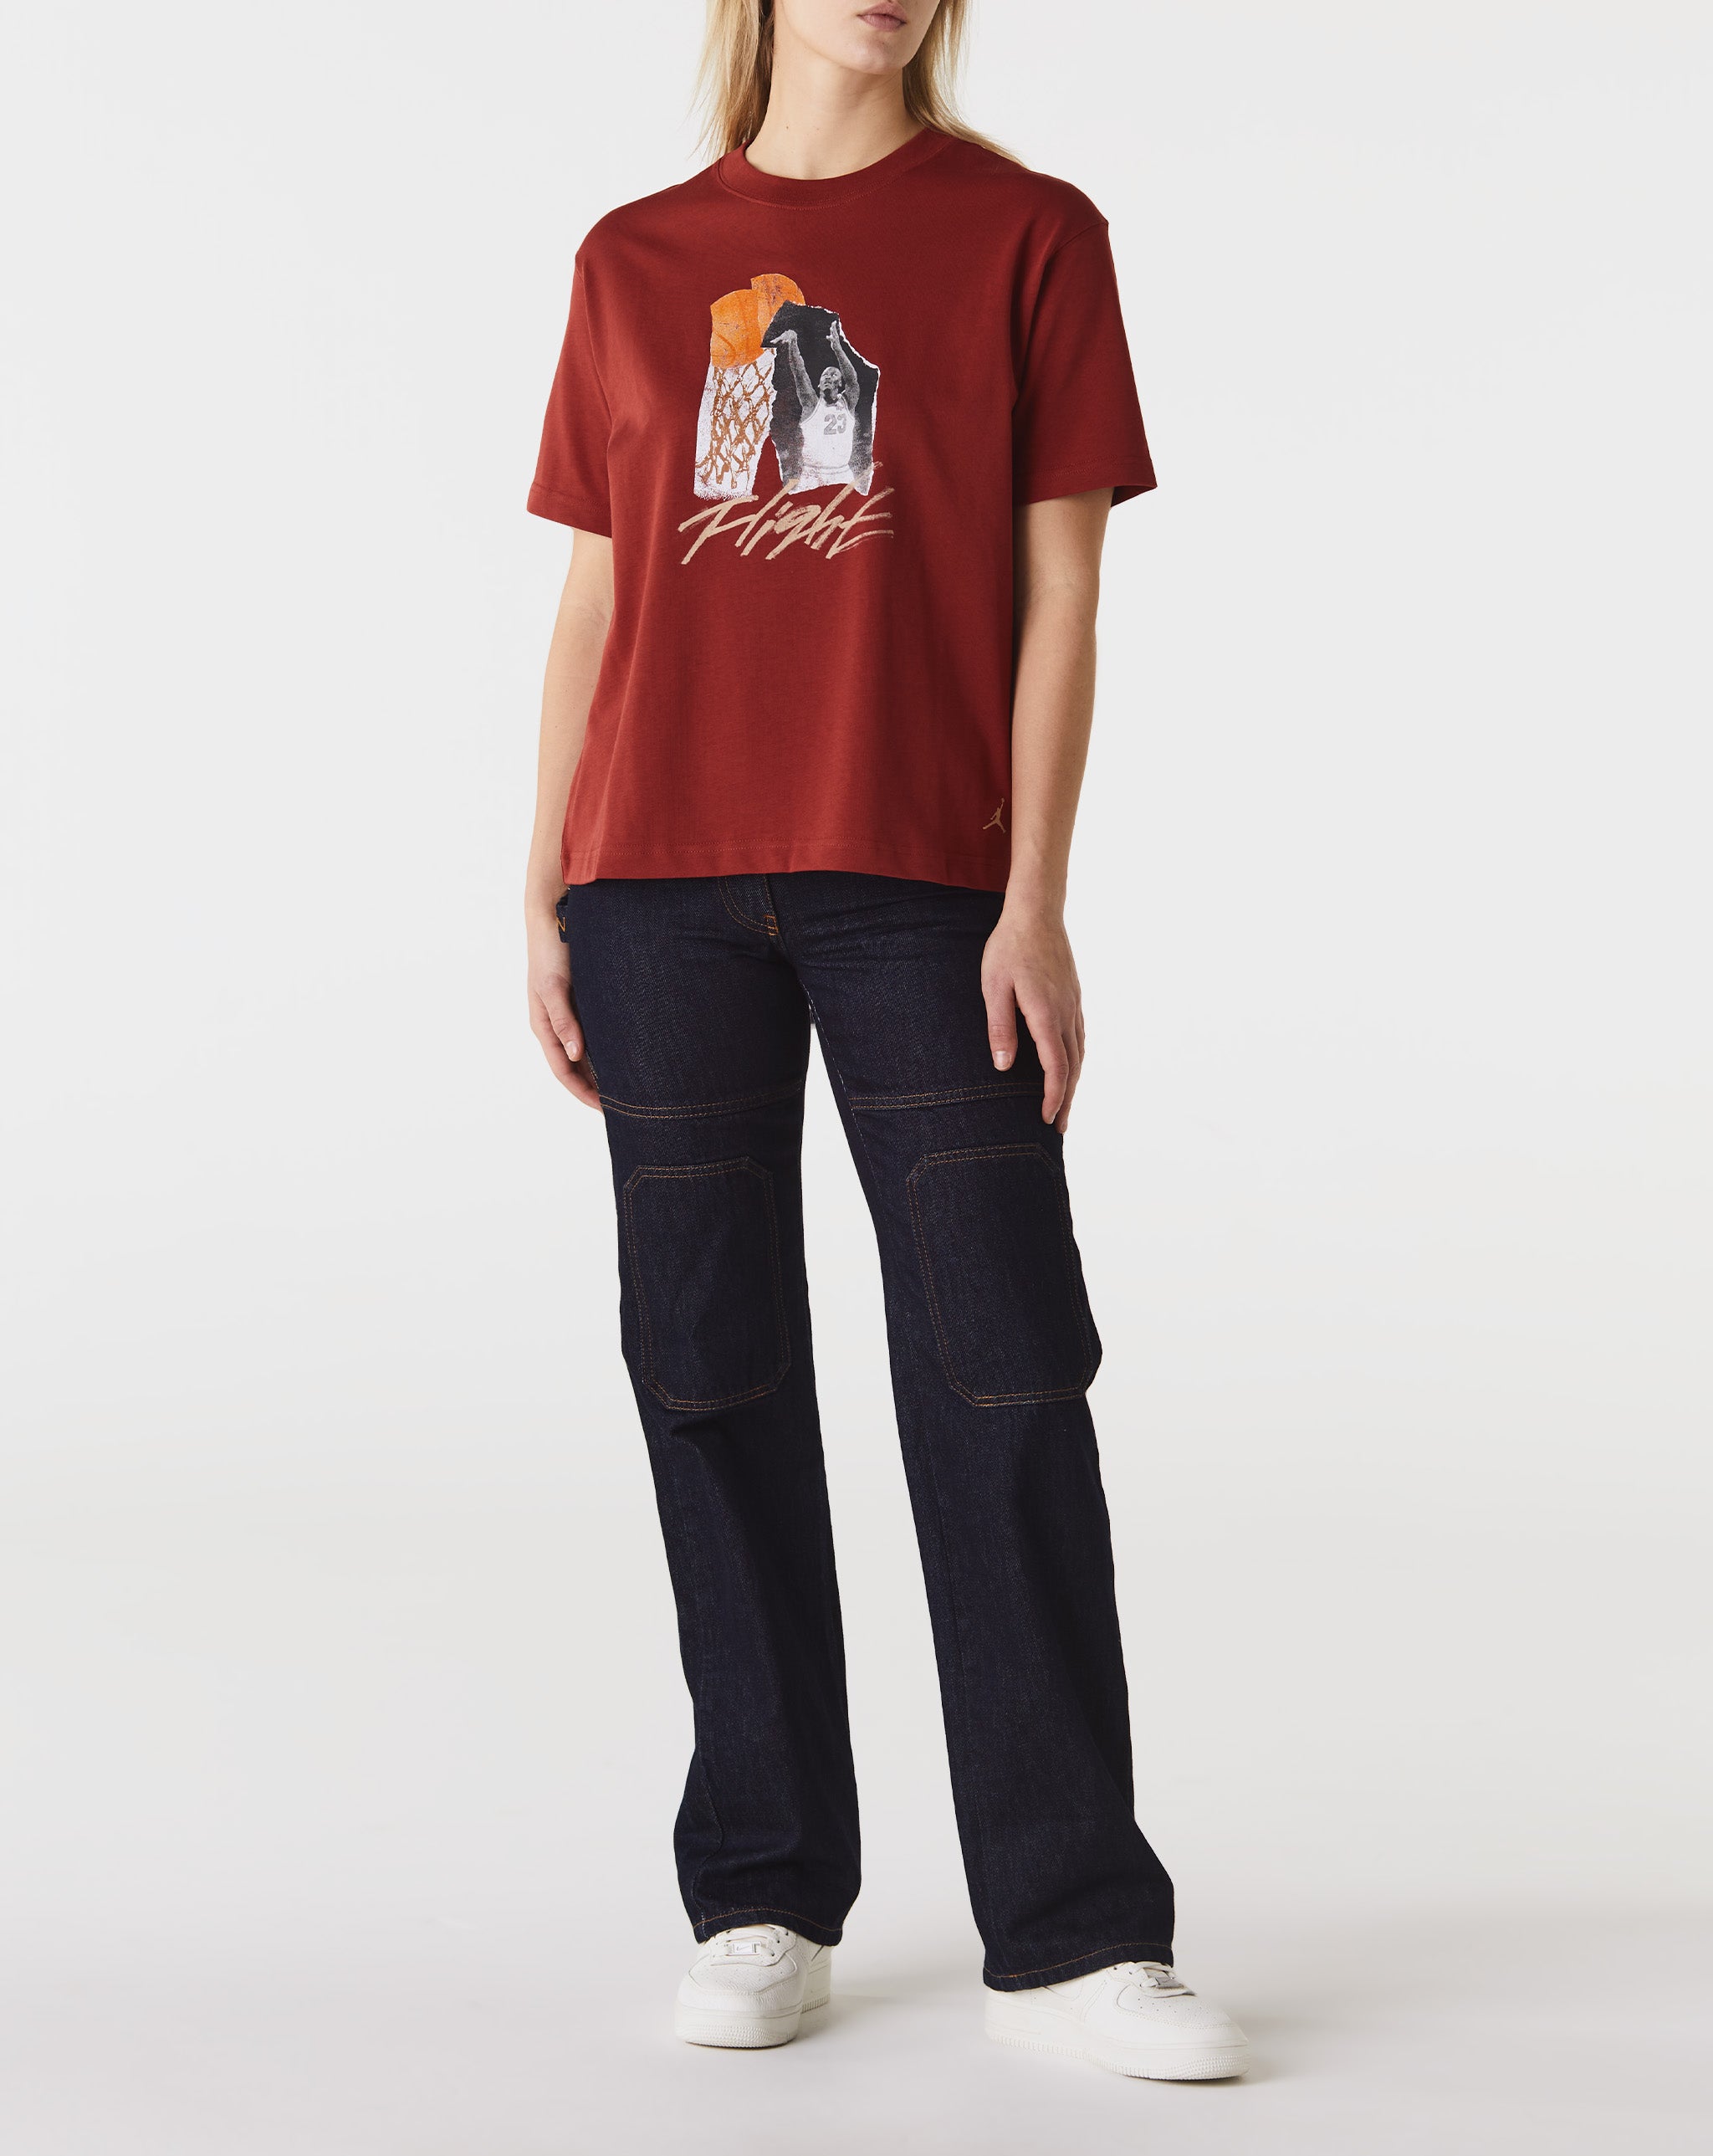 Air Jordan Women's Collage Girlfriend T-Shirt  - Cheap Urlfreeze Jordan outlet